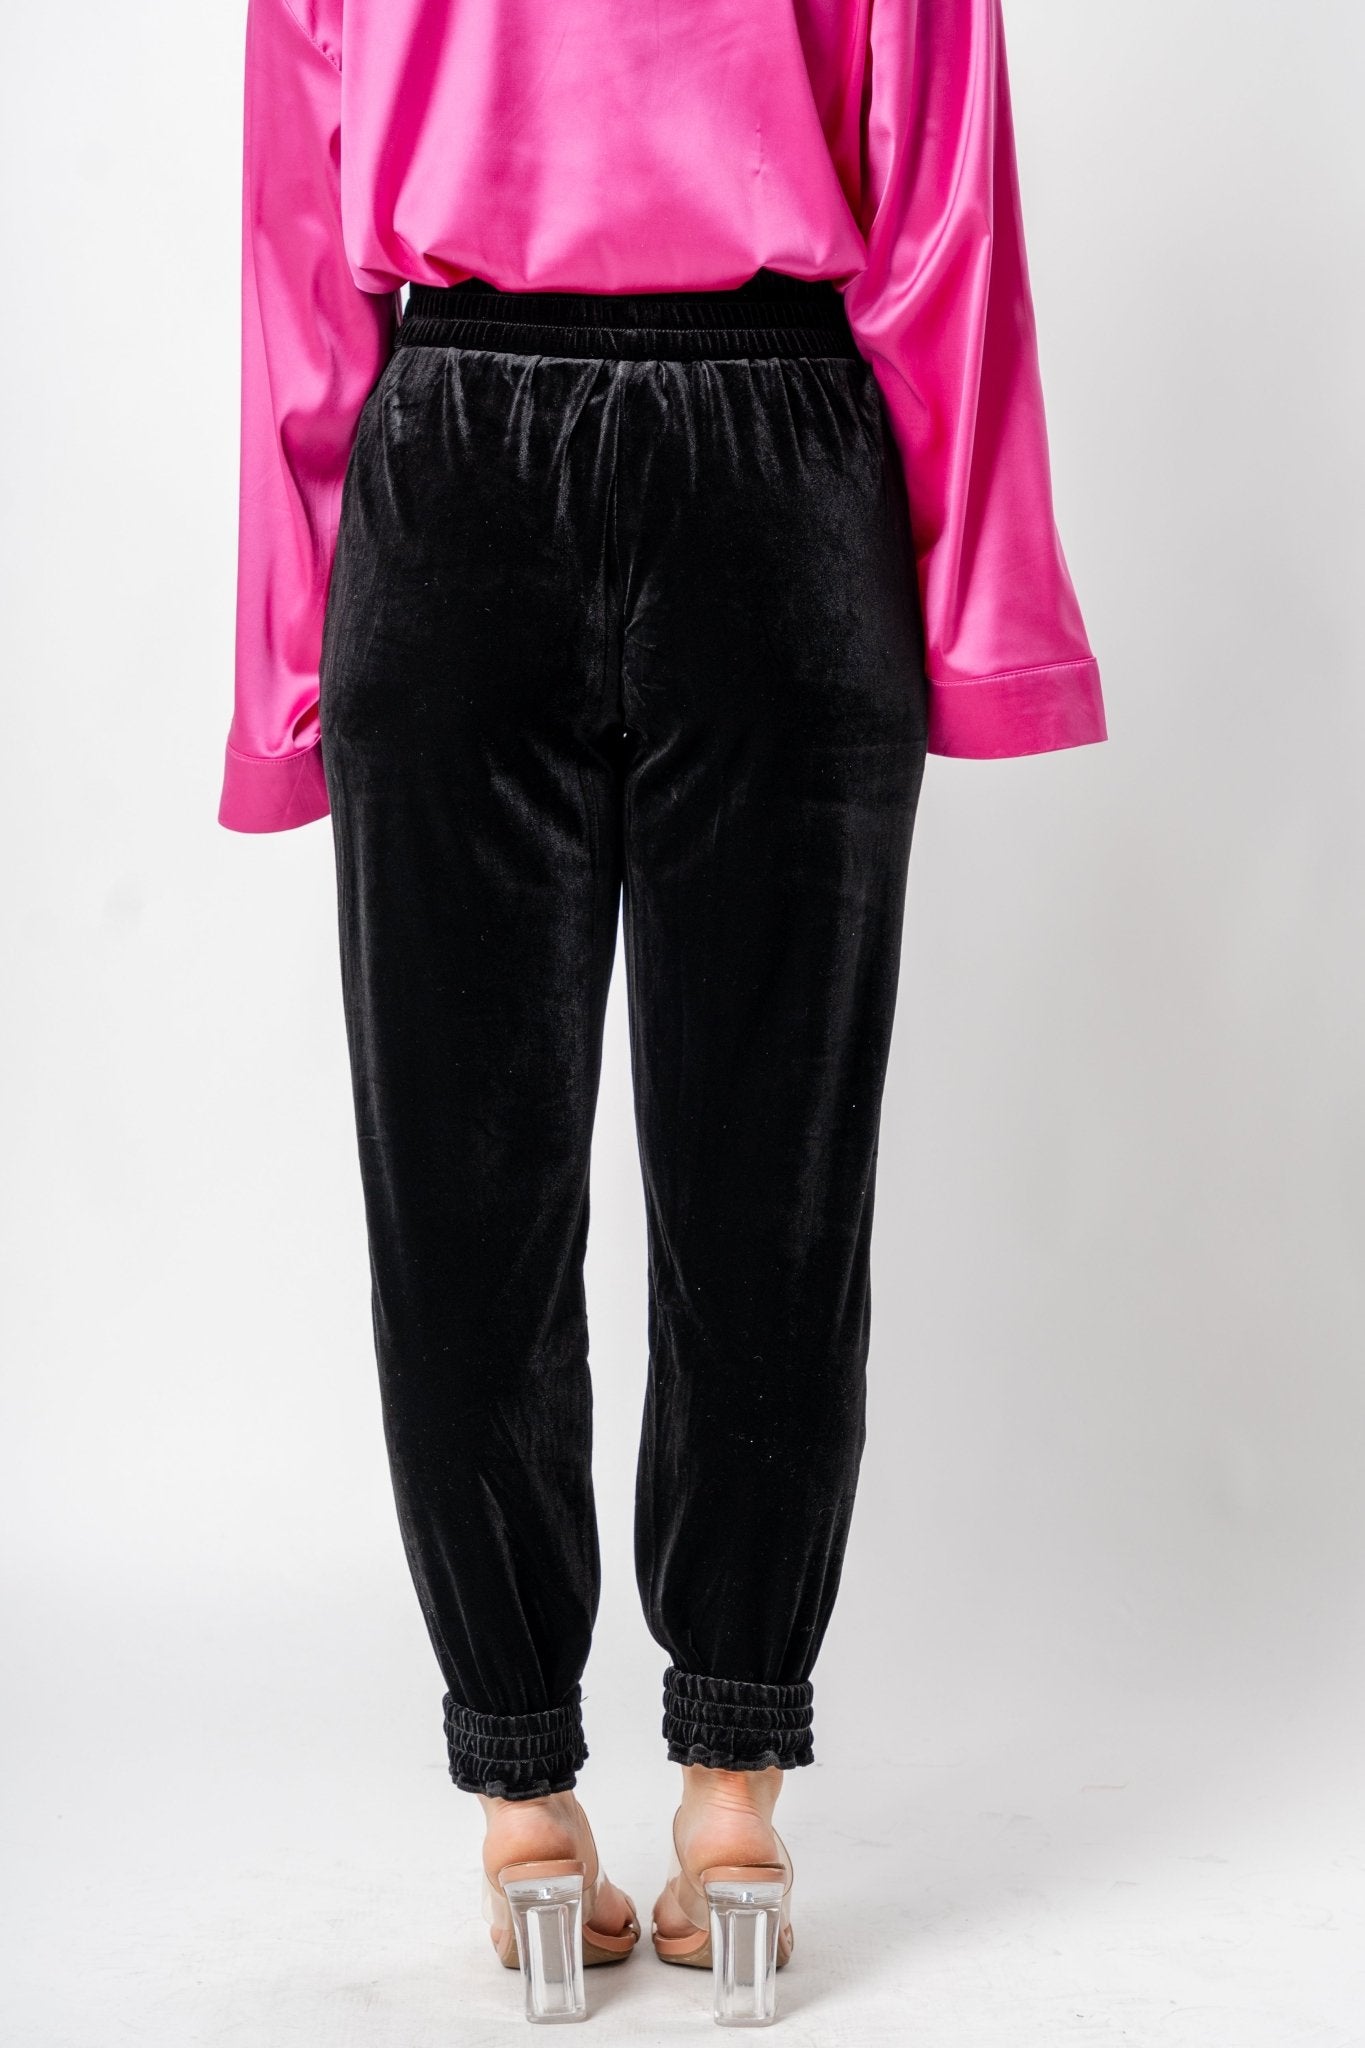 Velvet jogger pants black | Lush Fashion Lounge: women's boutique pants, boutique women's pants, affordable boutique pants, women's fashion pants